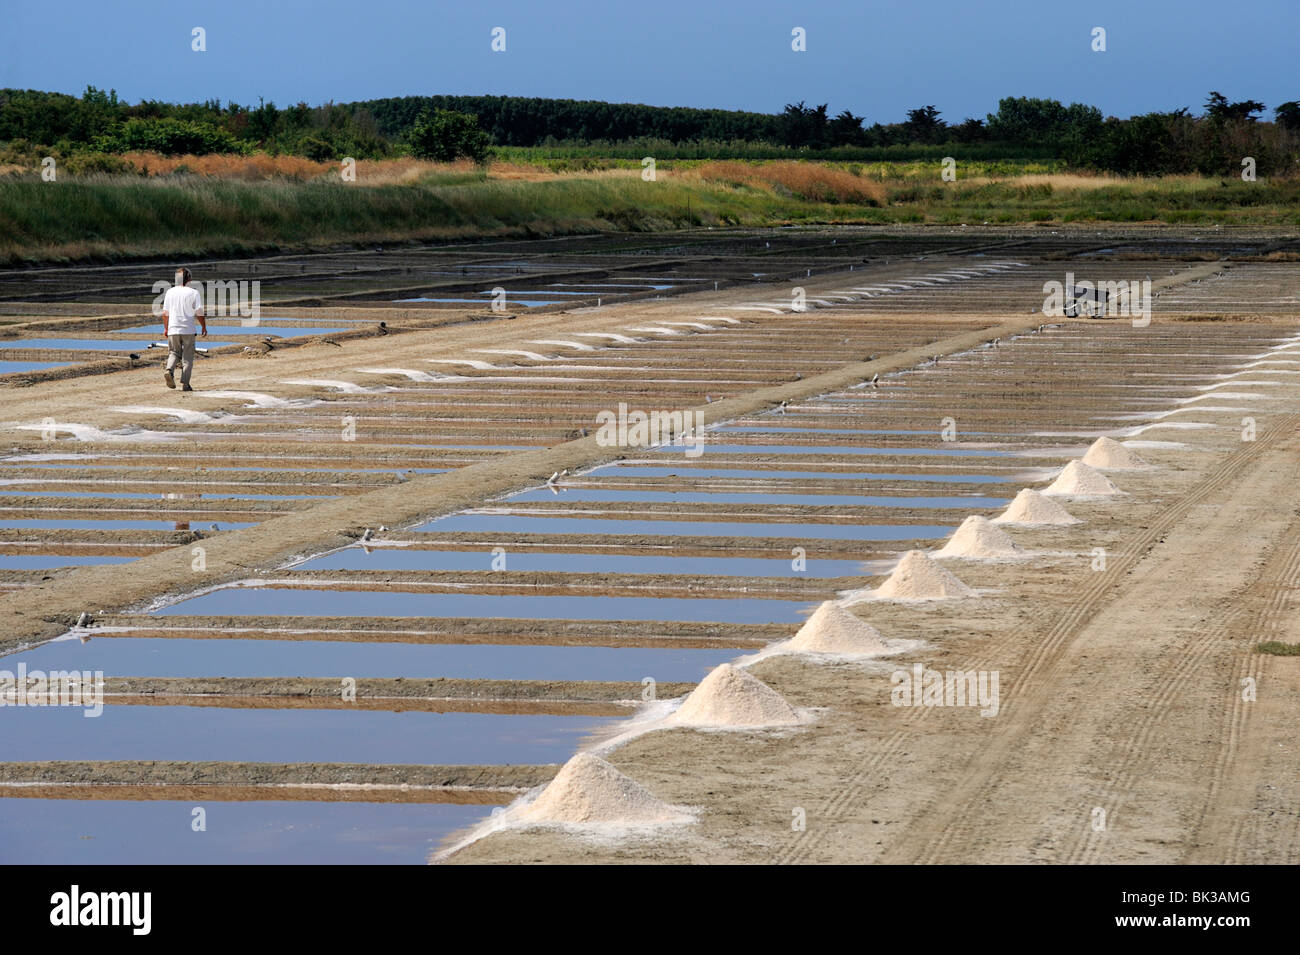 La collecte de sel dans les marais salants, Ars-en-Re, Ile de Re, Charente Maritime, France, Europe Banque D'Images